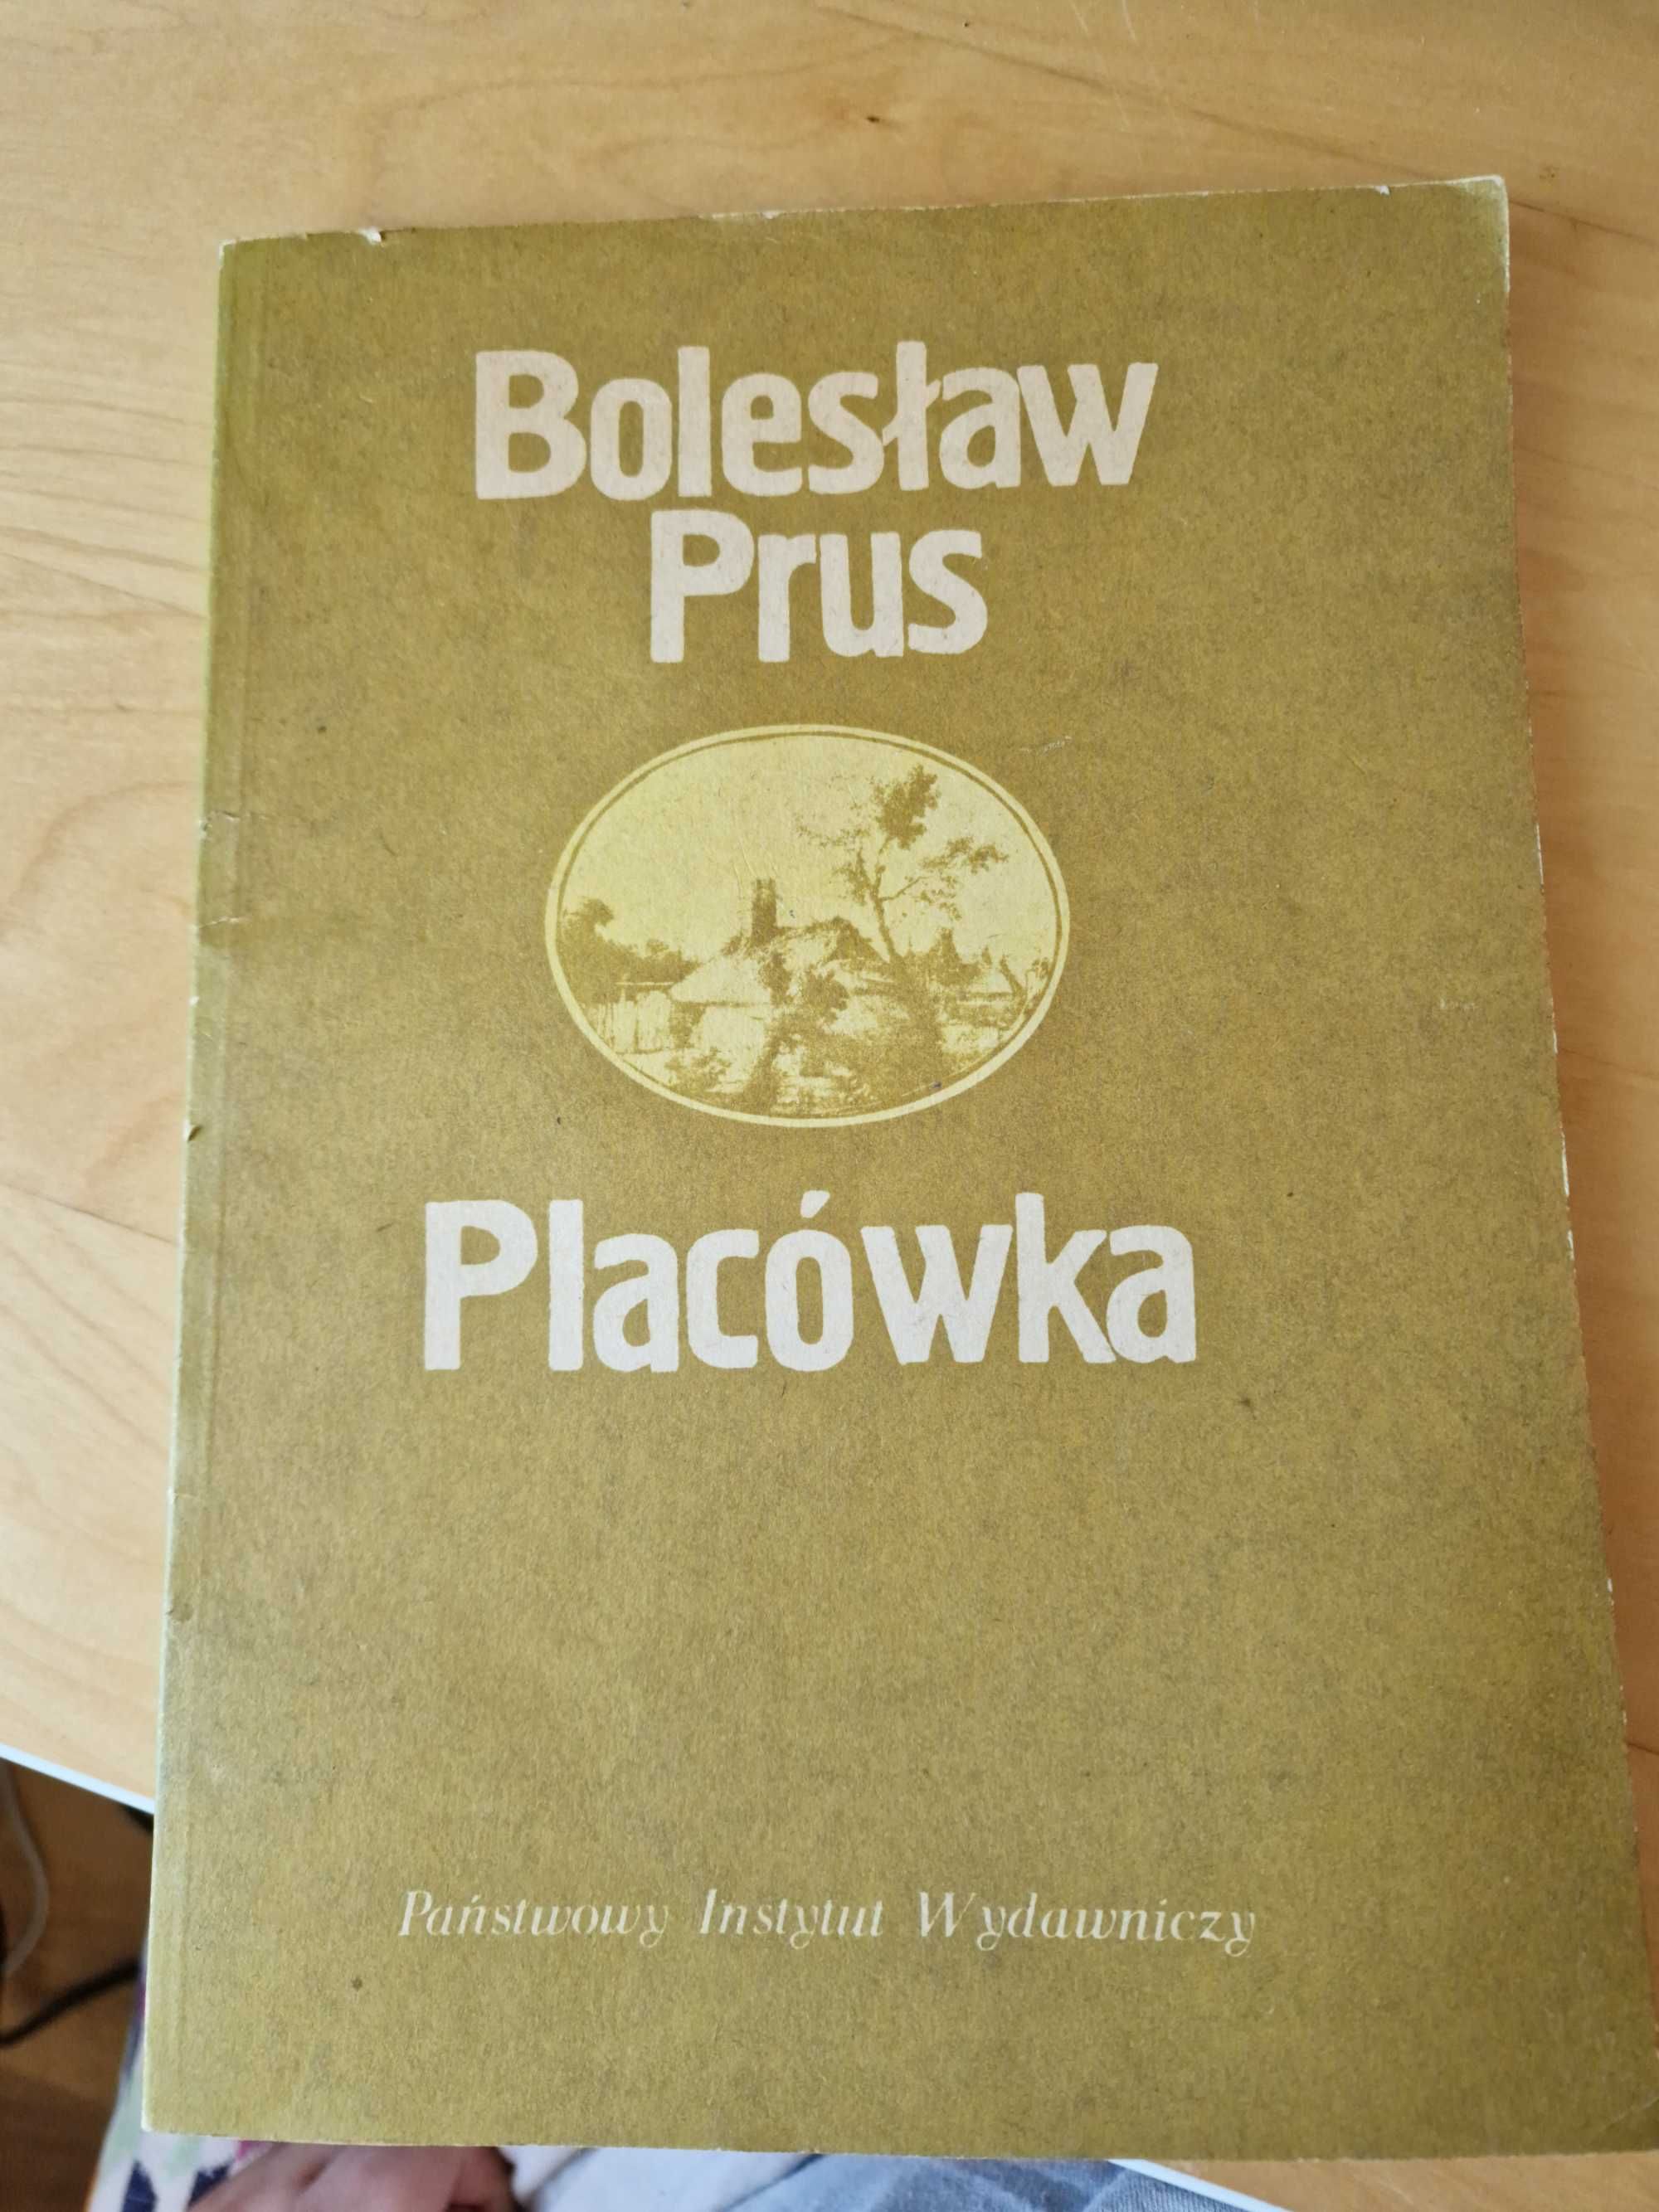 Bolesław Prus "Placówka" Staroć Wydanie A4